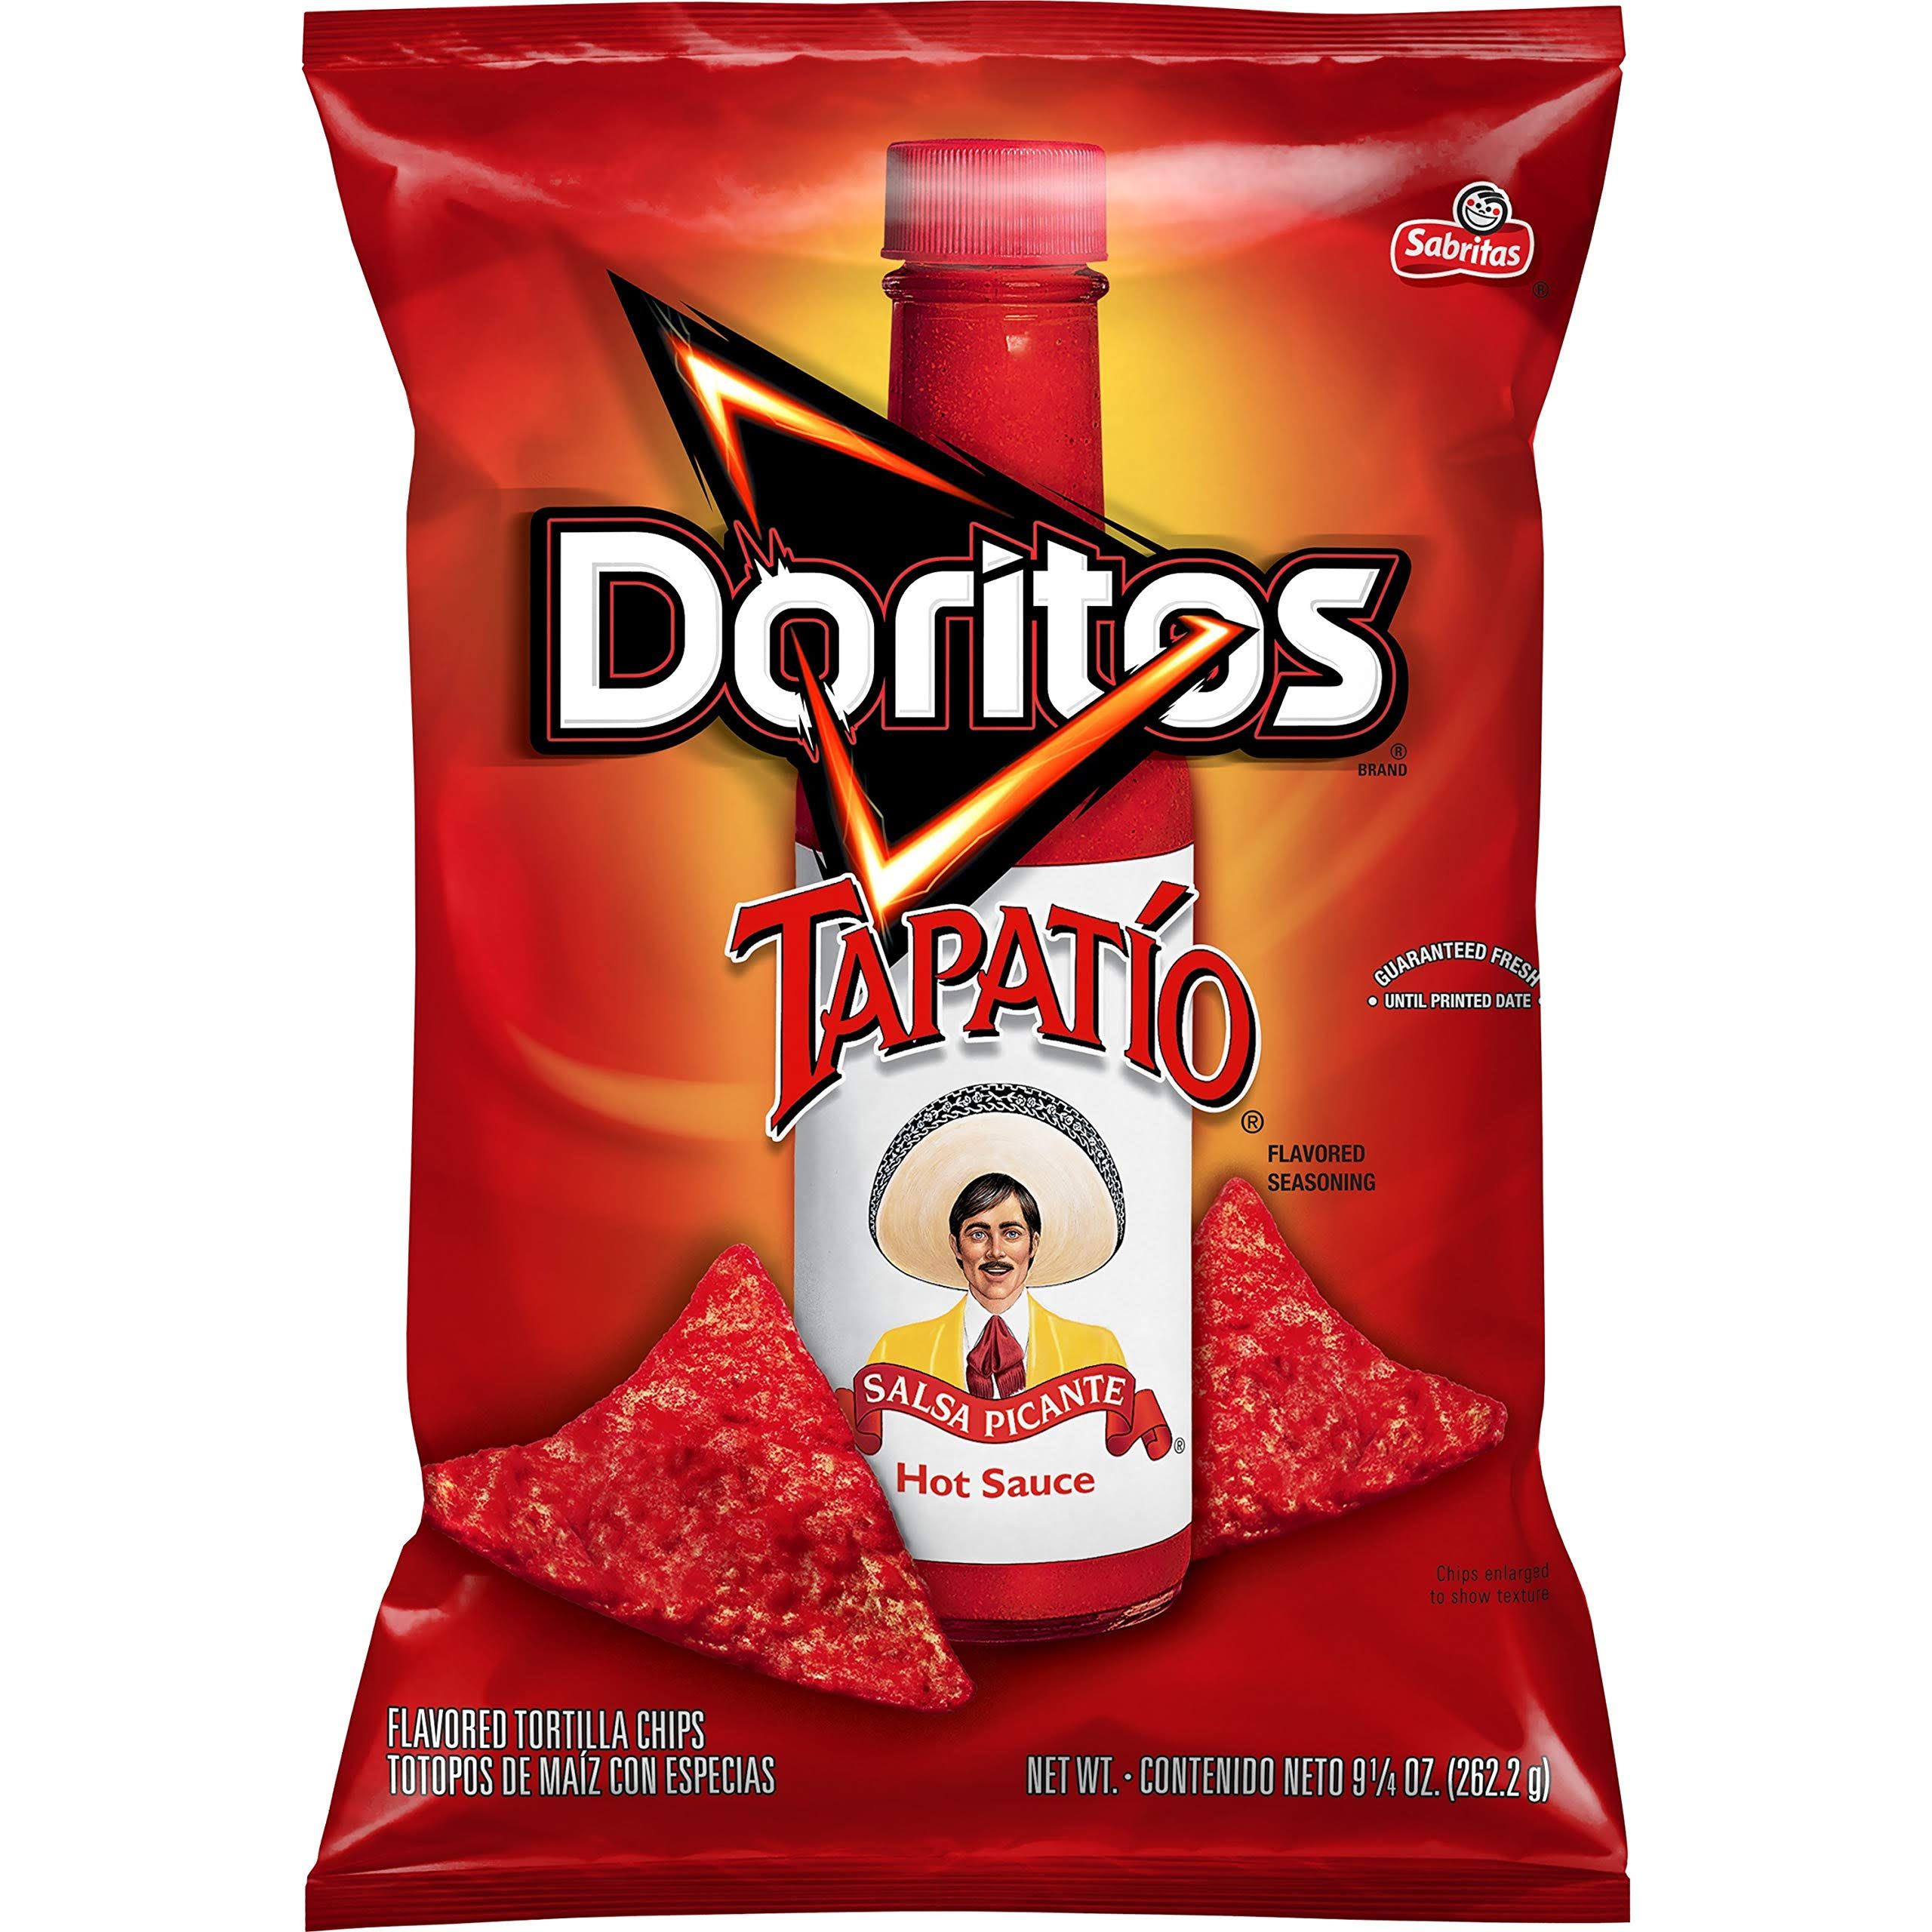 Doritos Tortilla Chips Tapatio Bag, 9.25 Ounce